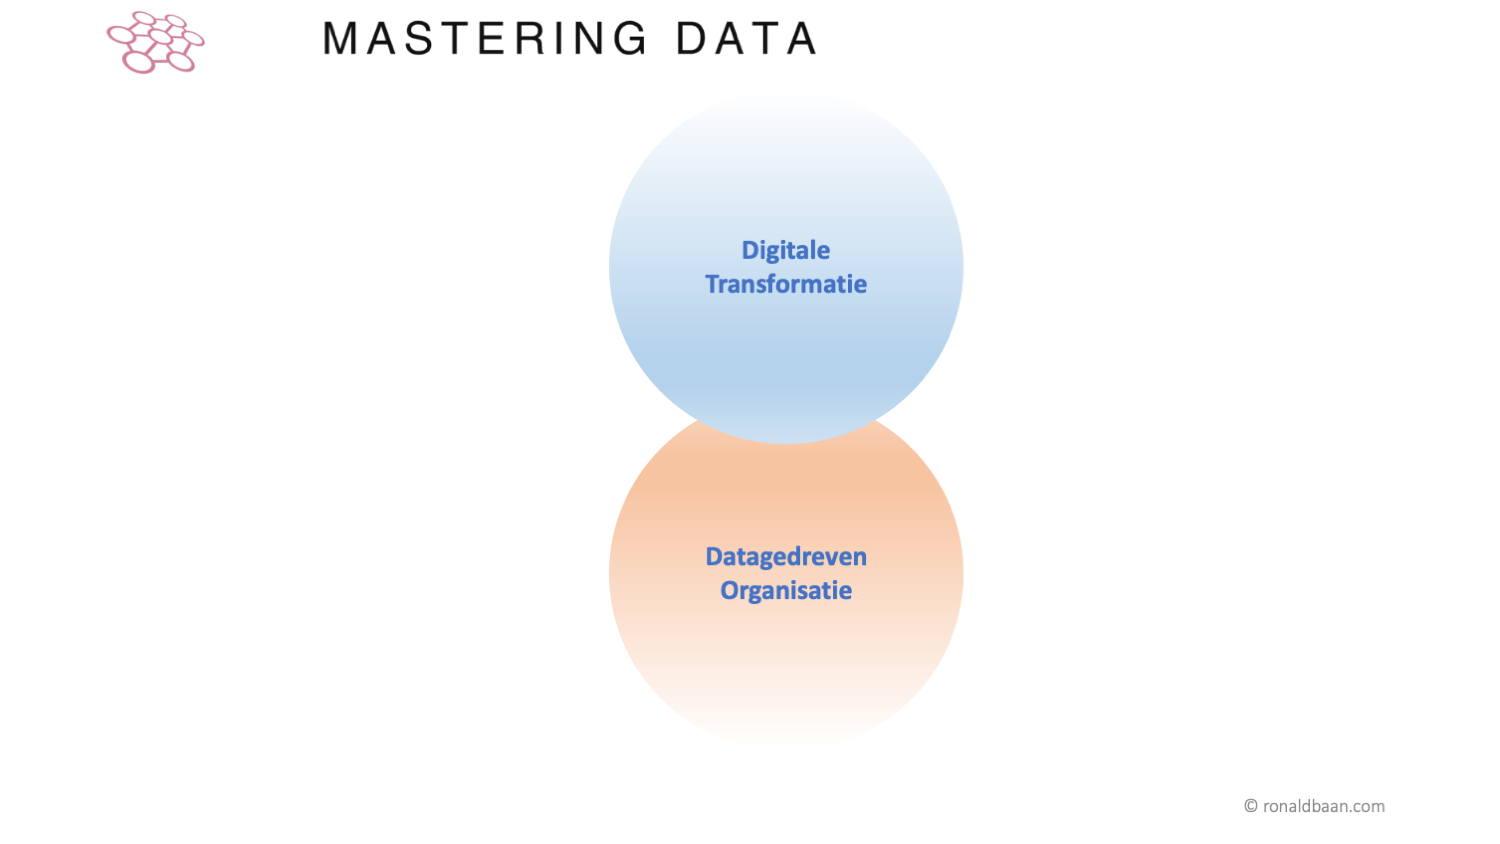 Digitale Transformatie vs. Datagedreven Werken